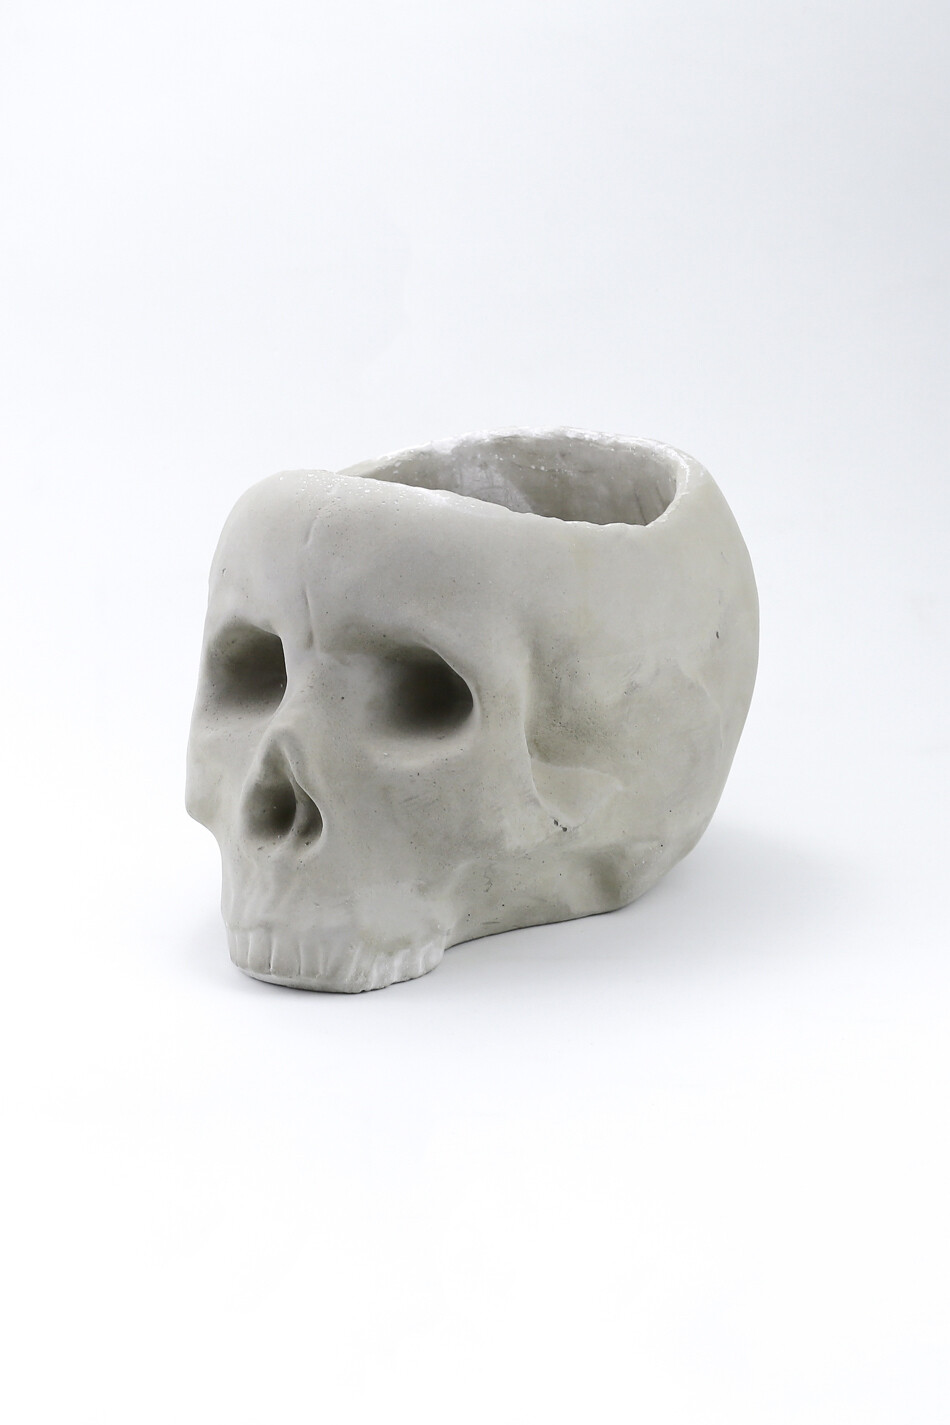 Flowerpot "Moraine Skull"